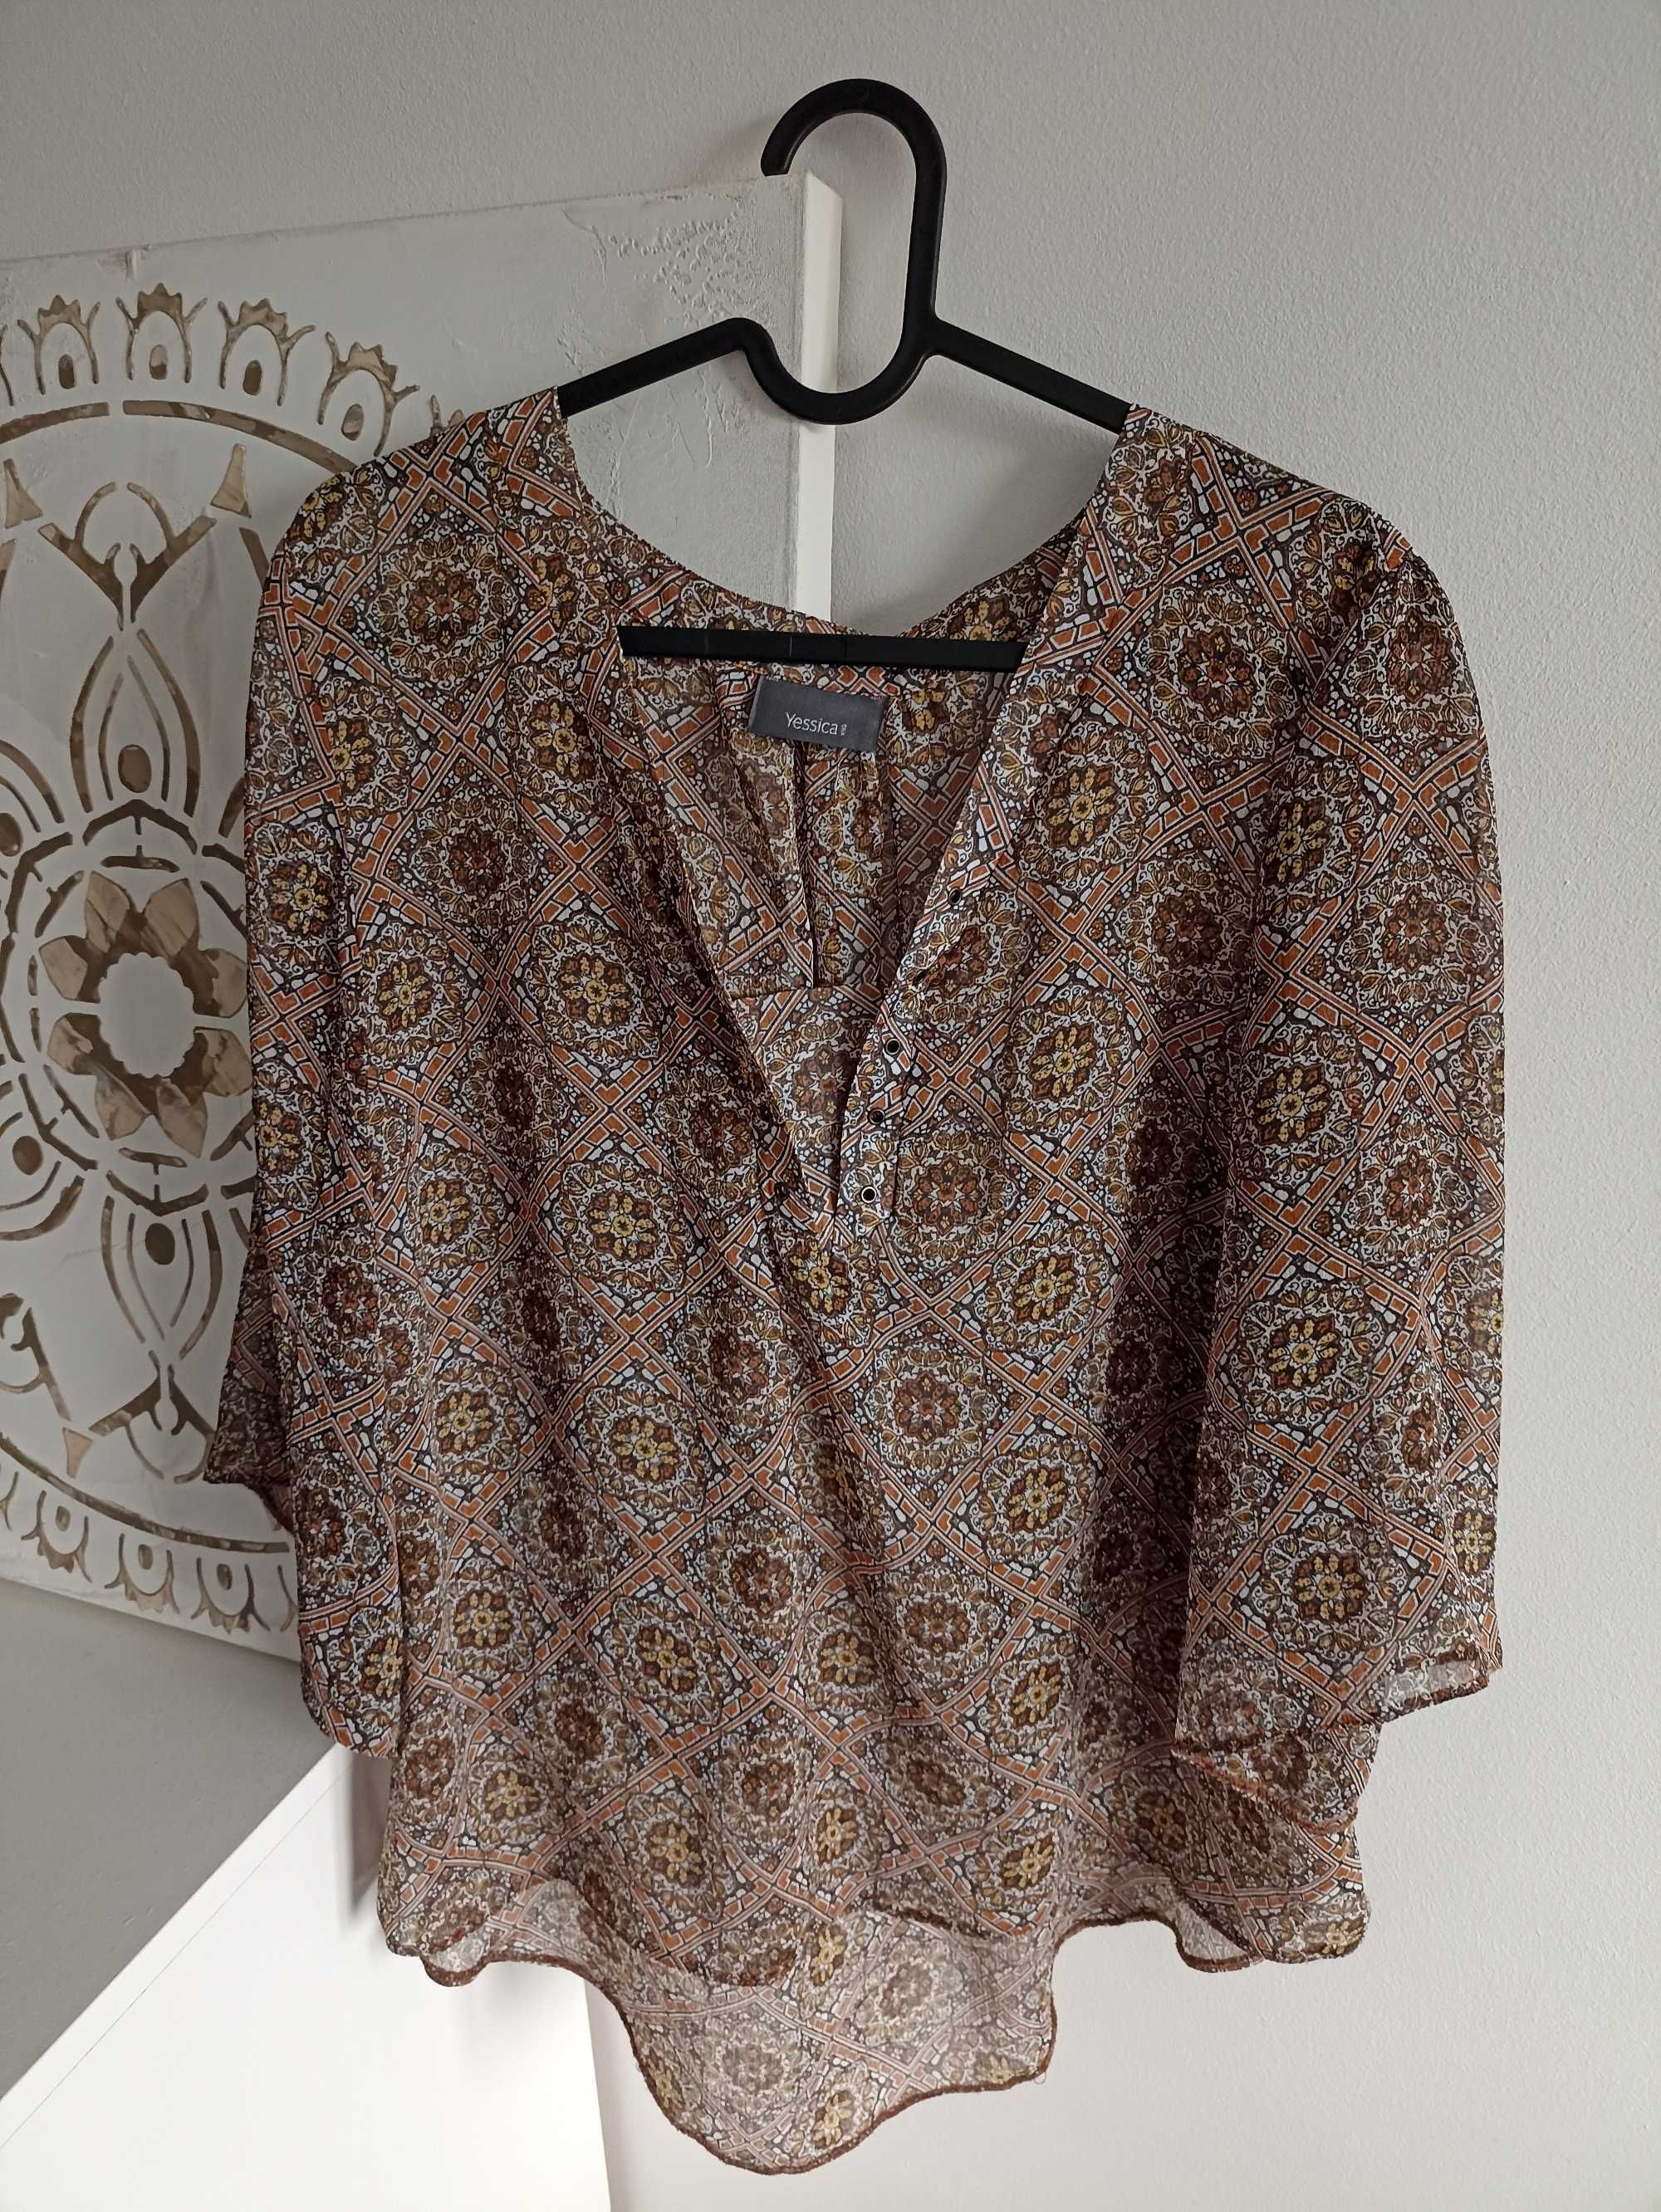 Elegancka piękna przezroczysta bluzka Yessica brązowa piękny wzór M/L